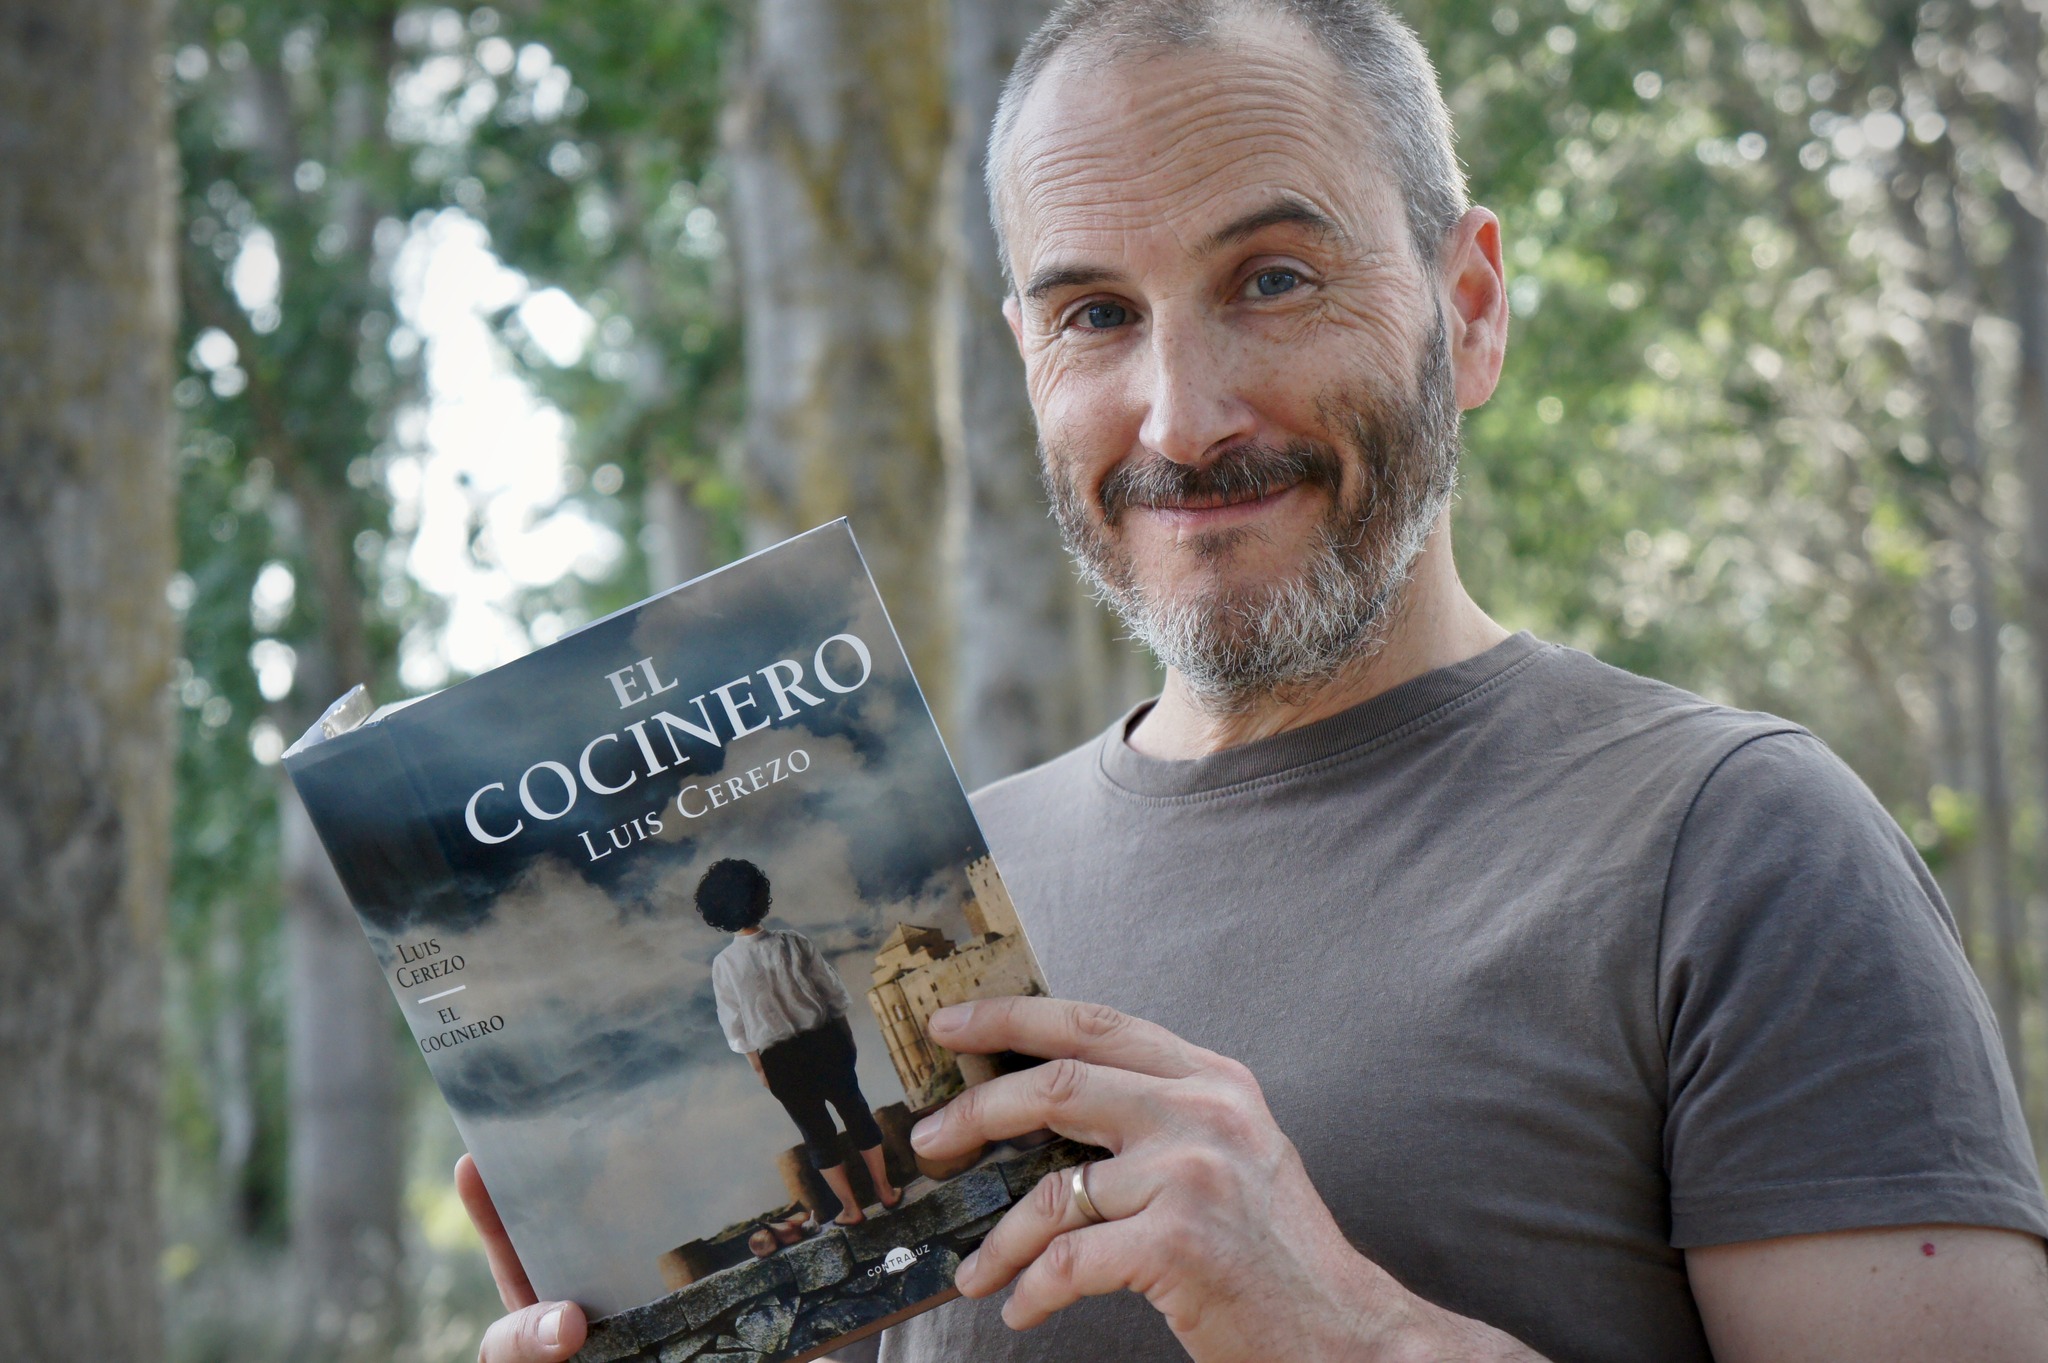 Luis Cerezo con su libro "El cocinero". (Contraluz Editorial/Facebook)